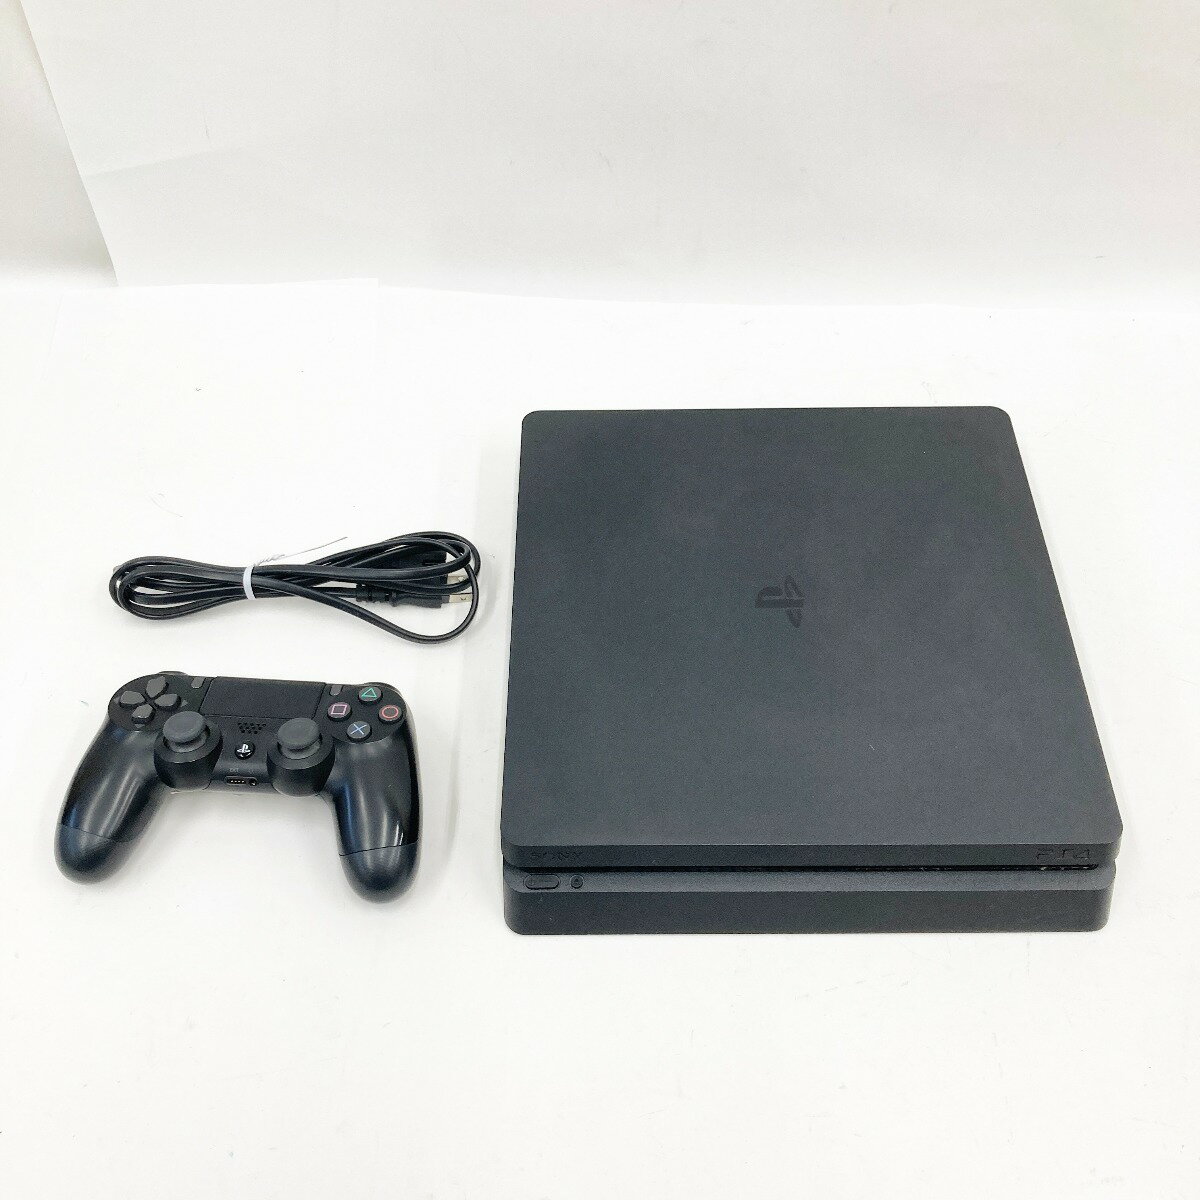 〇〇【中古】SONY ソニー PlayStation4 プレステ4 500GB 本体 コントローラー1個付 CUH-2200A Cランク